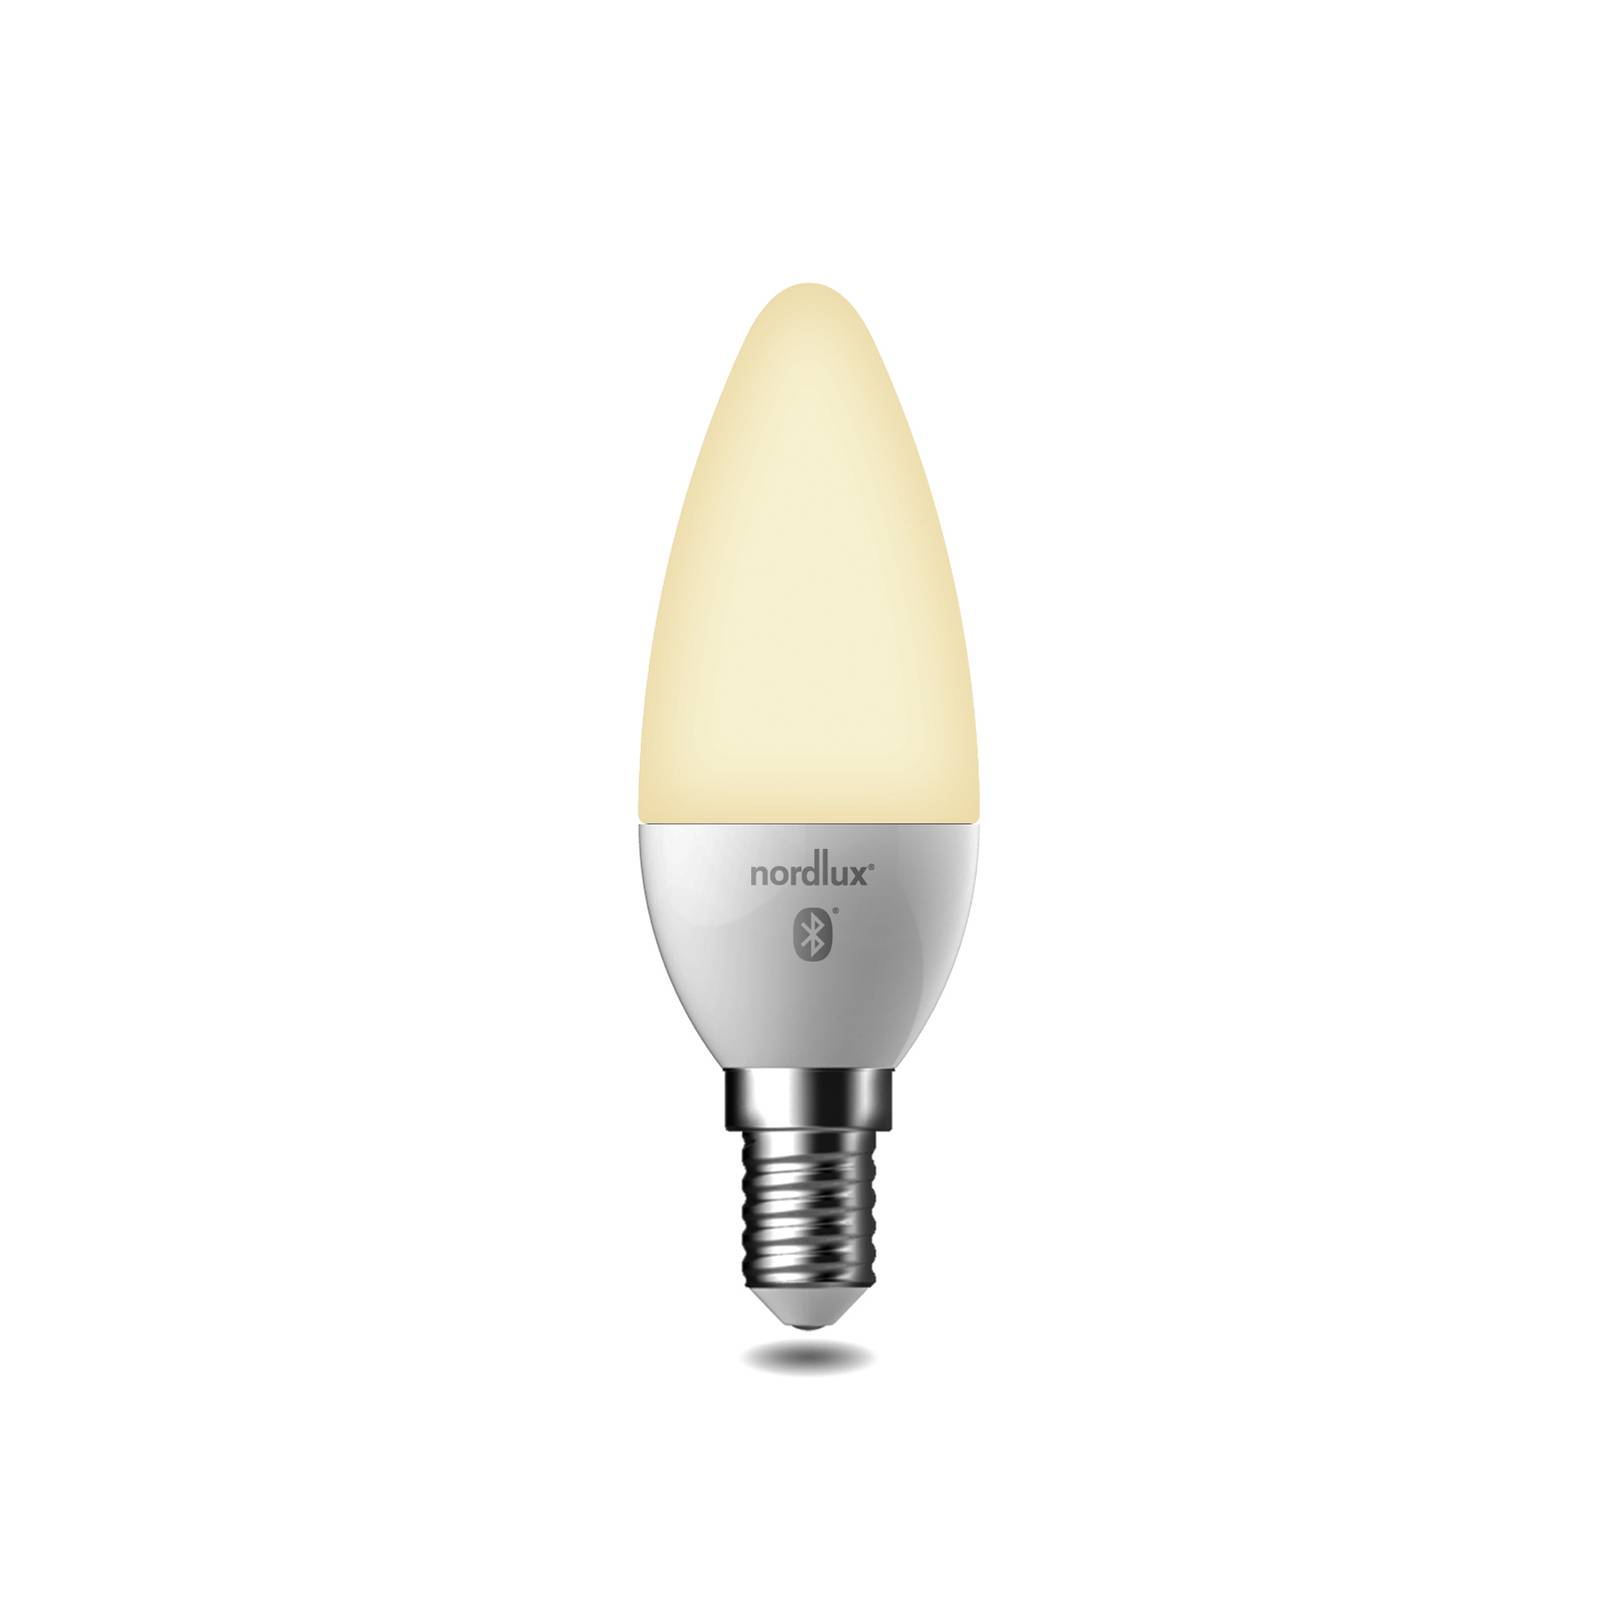 Zdjęcia - Żarówka Nordlux  świeca LED E14 4,7W CCT 450lm, smart 